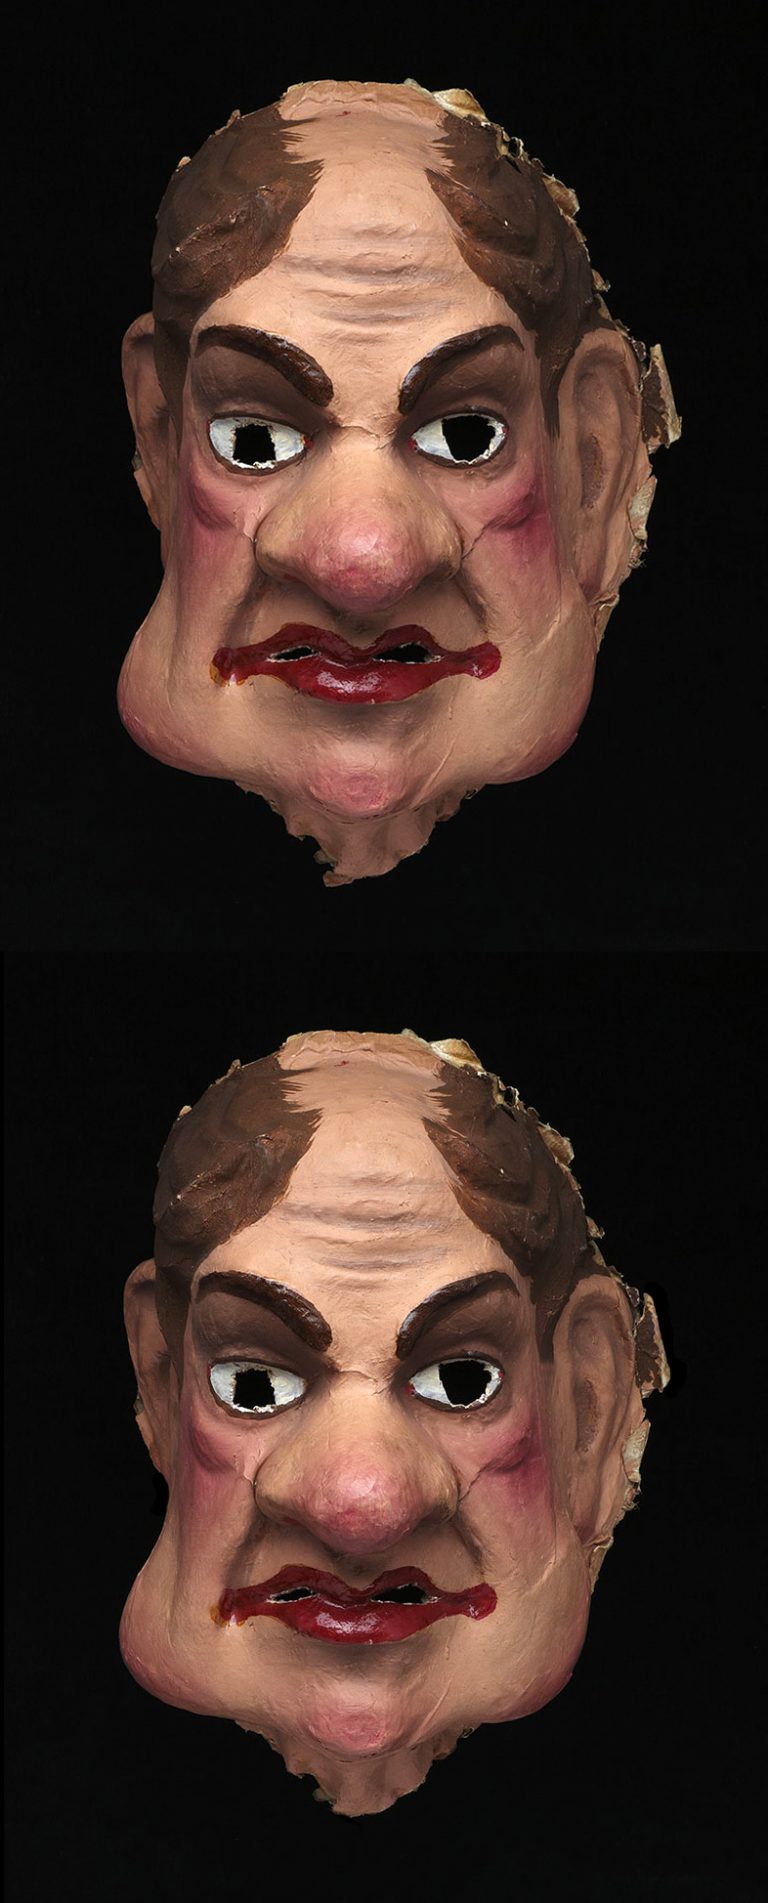 Masque, Carnaval de Nantes intitulé « Le Baron » réalisé par la maison Peignon à Nantes à la fin du 19e siècle